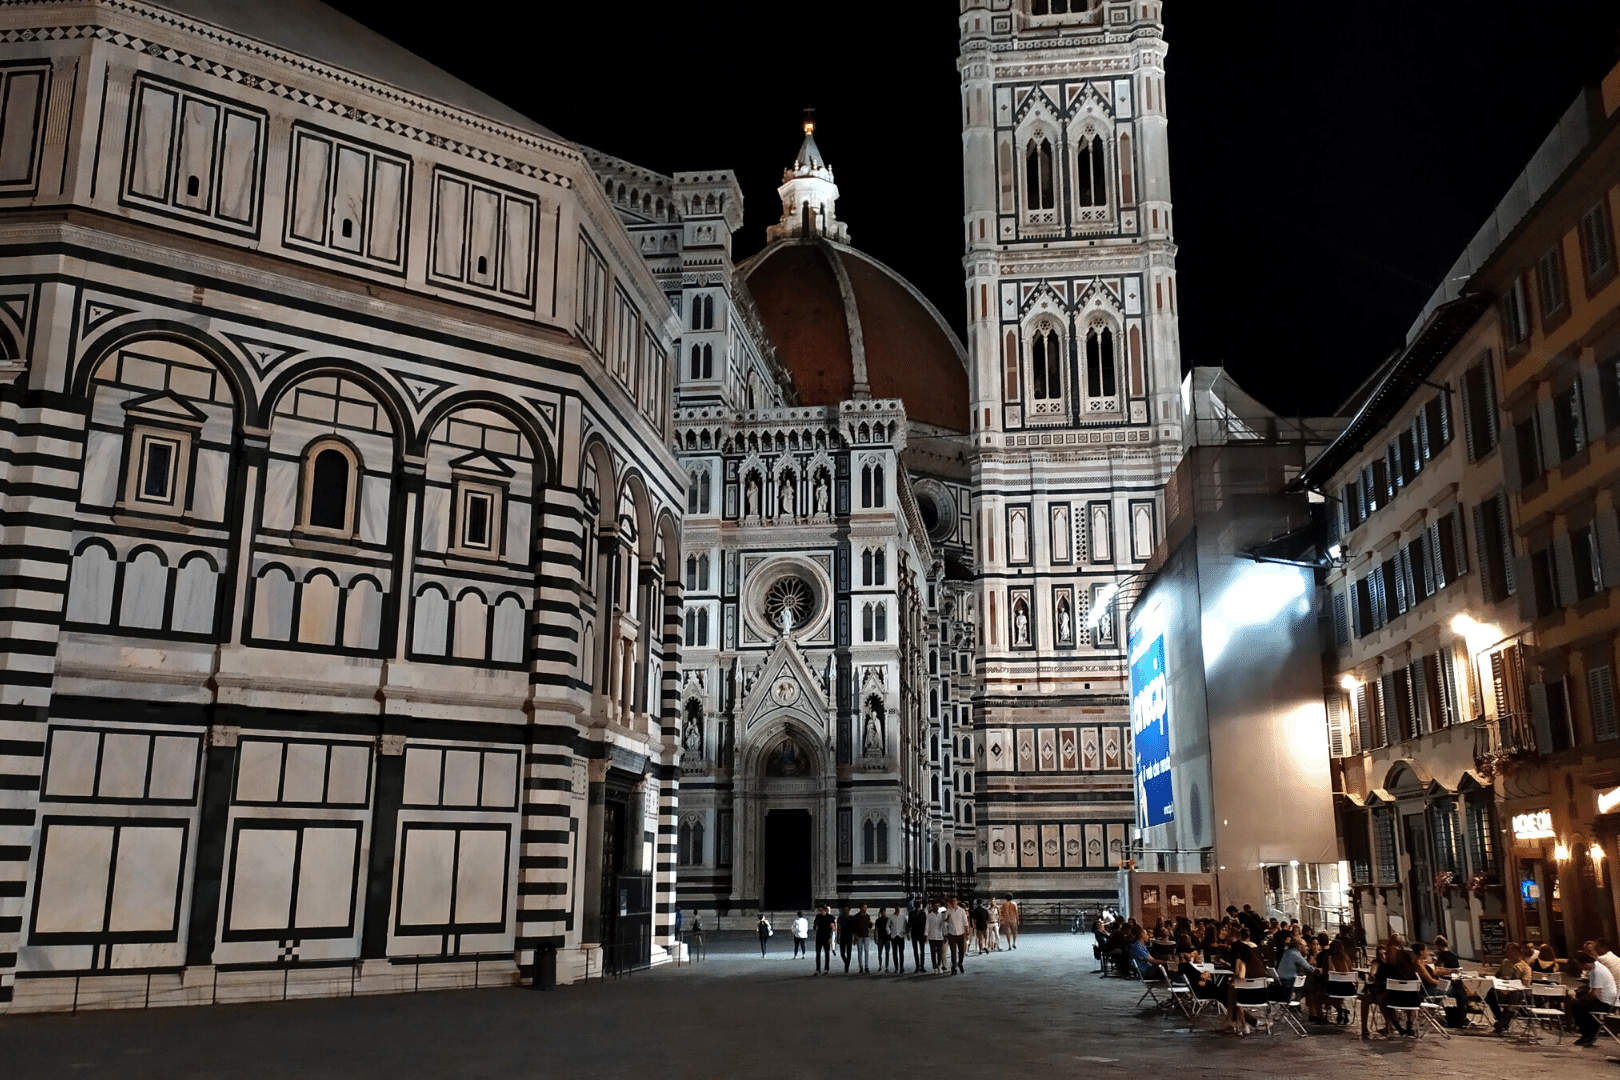 2Italia Experiences. Florence Duomo at night